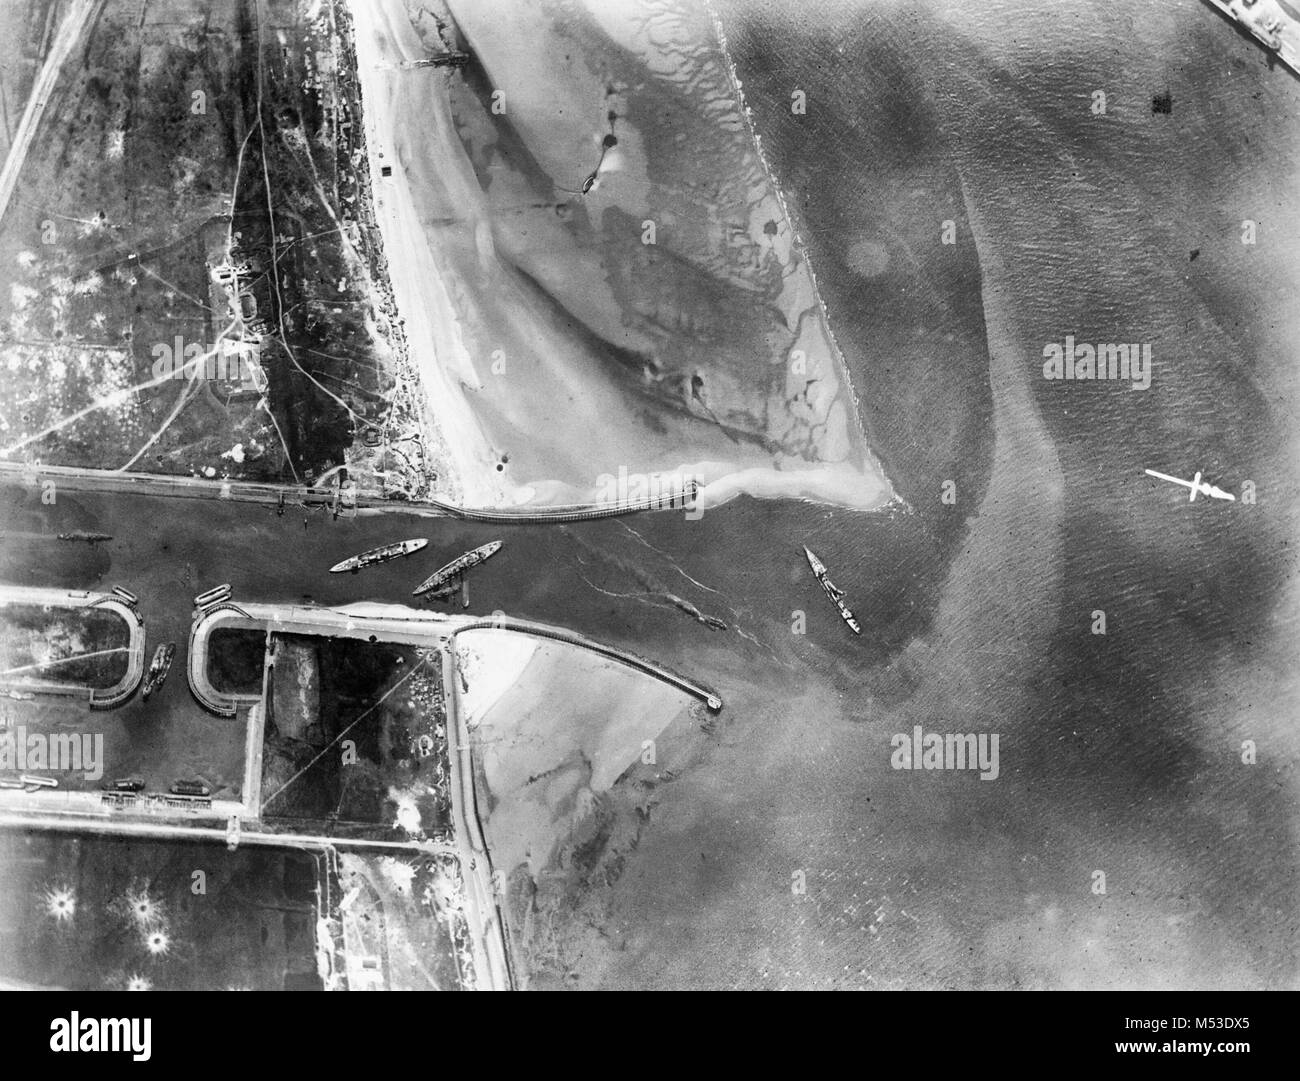 Photographie aérienne montrant le lendemain de Zeebrugge Raid. La blockships sont, gauche - droite : HMS Intrepid, HMS Iphigenia, HMS Thetis. Avril 1918 Banque D'Images